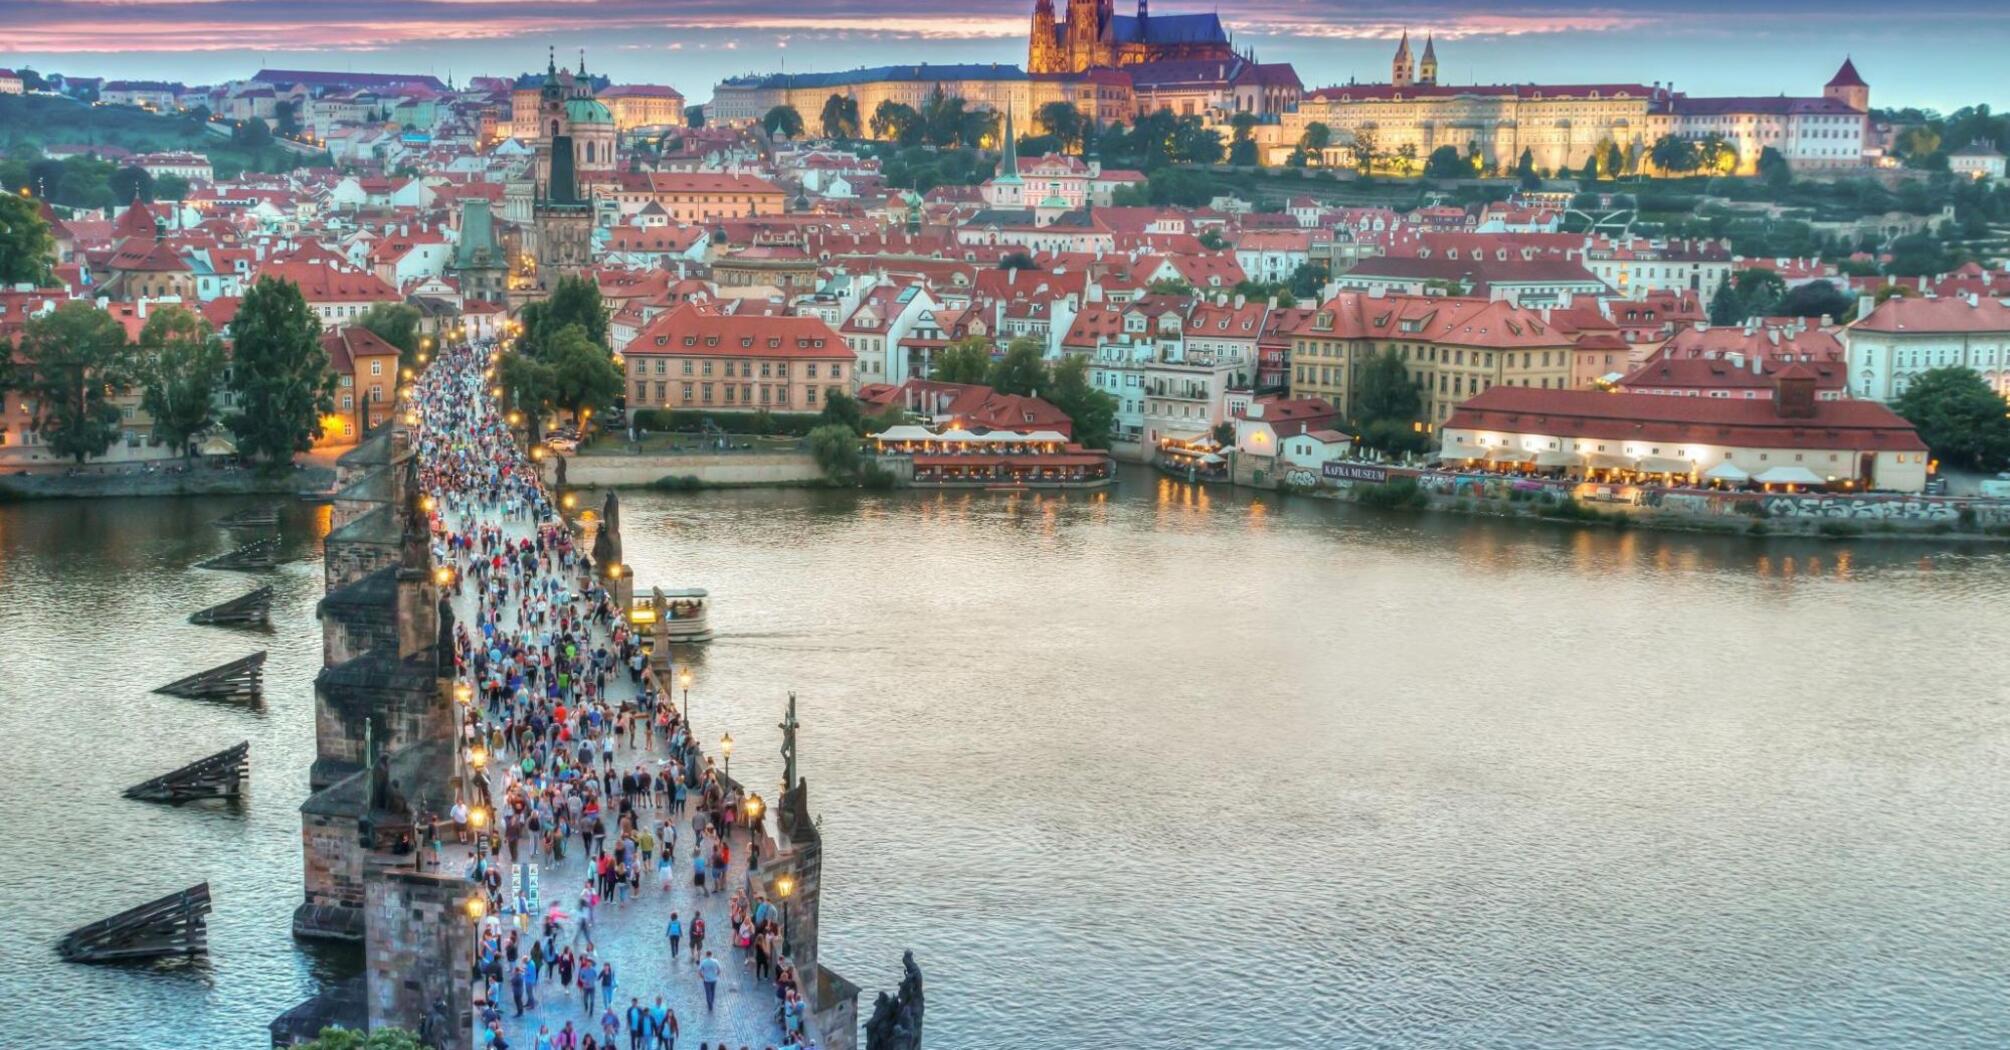 Aerial view of the people walking on the bridge in Prague